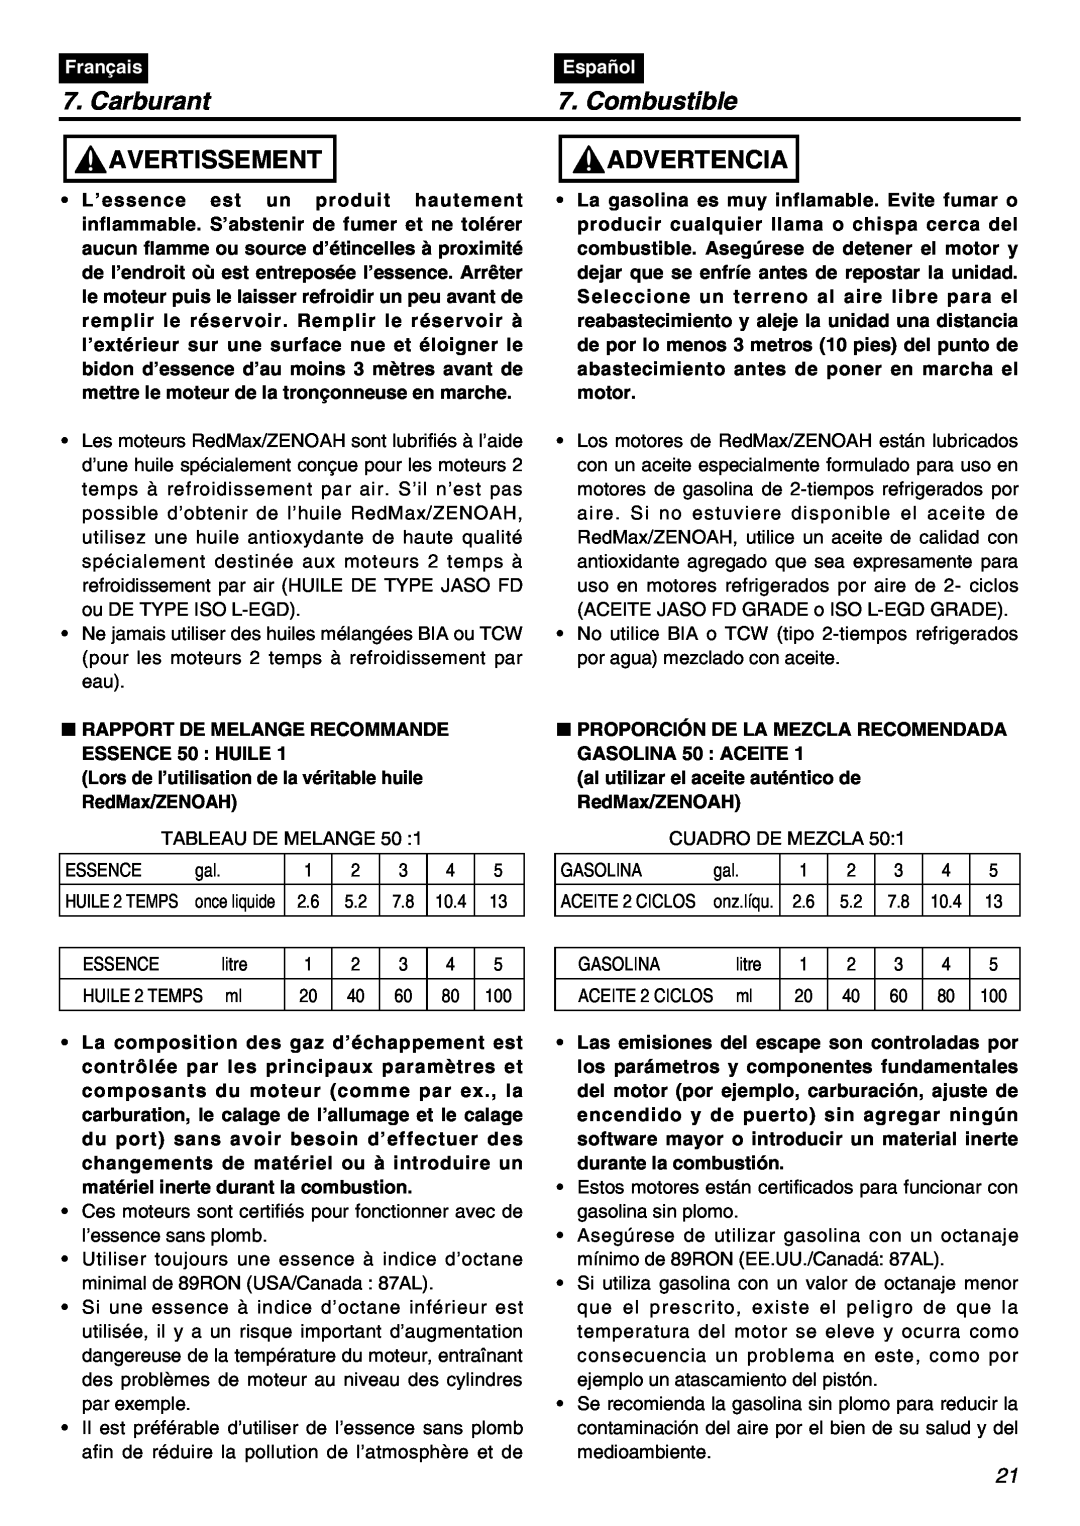 Zenoah BT250 manual Carburant, Combustible, Avertissement, Advertencia, Français, Español 